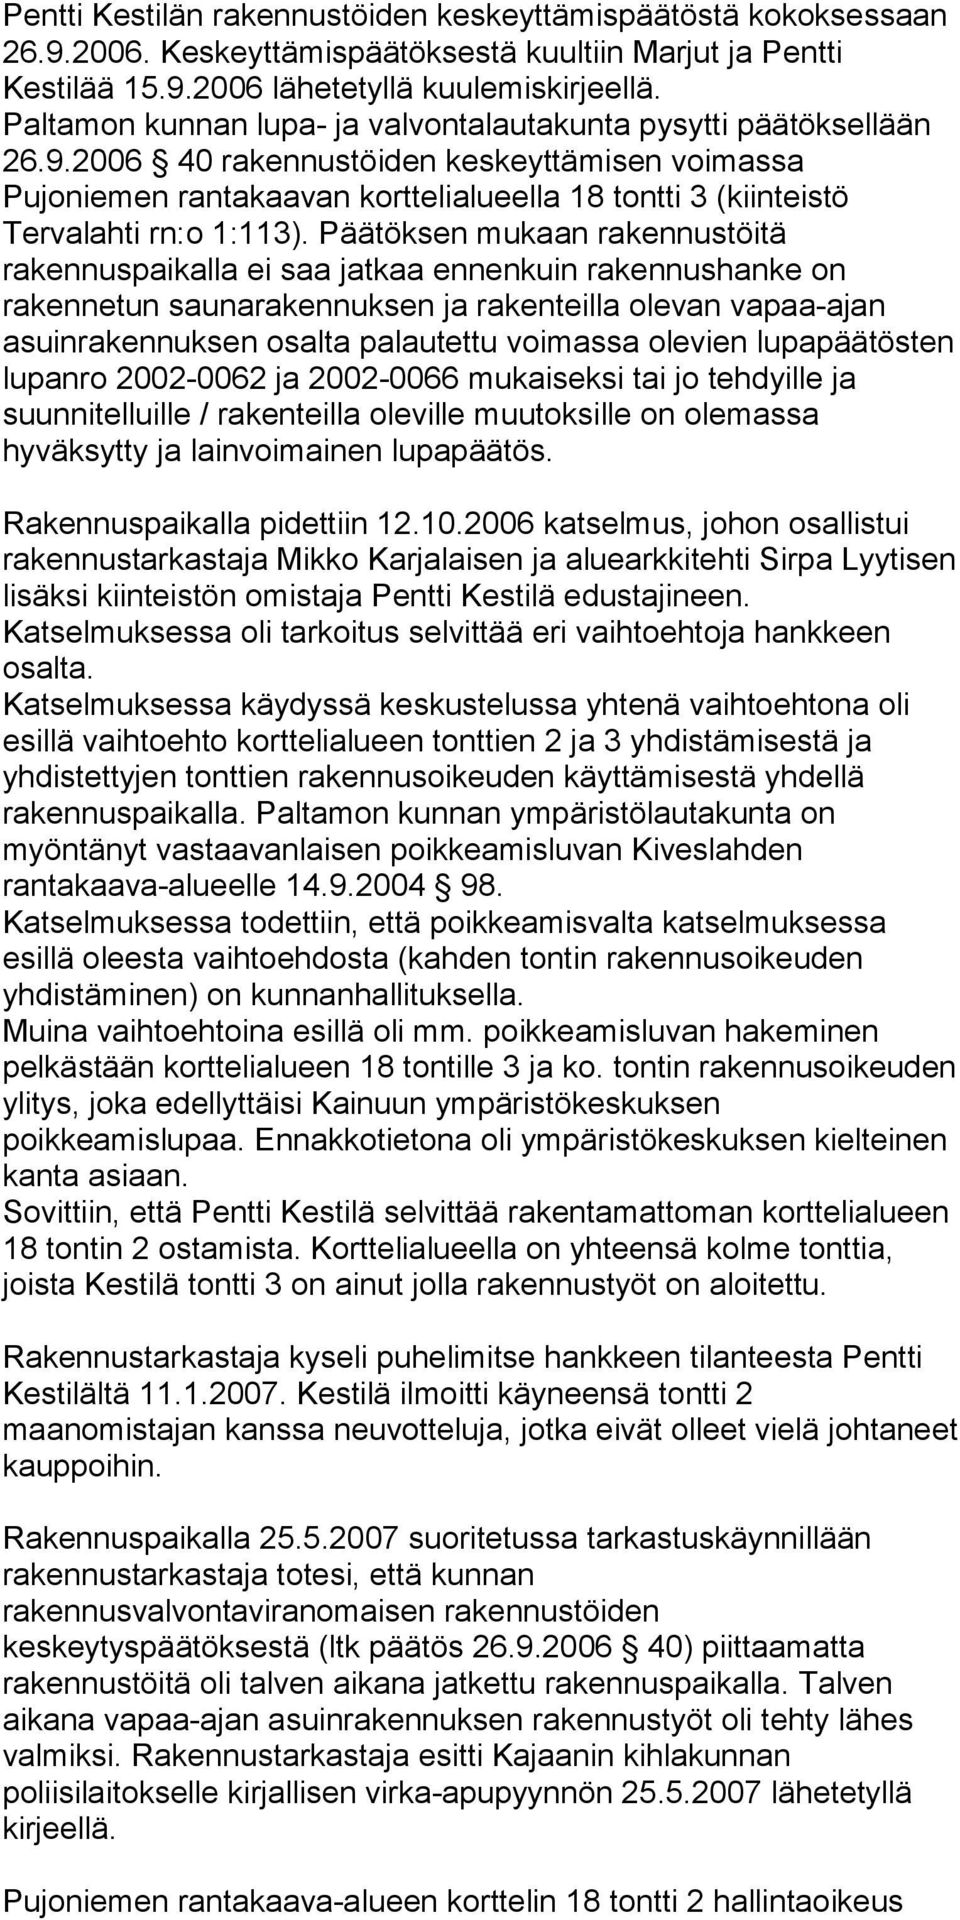 2006 40 rakennustöiden keskeyttämisen voimassa Pujoniemen rantakaavan korttelialueella 18 tontti 3 (kiinteistö Tervalahti rn:o 1:113).